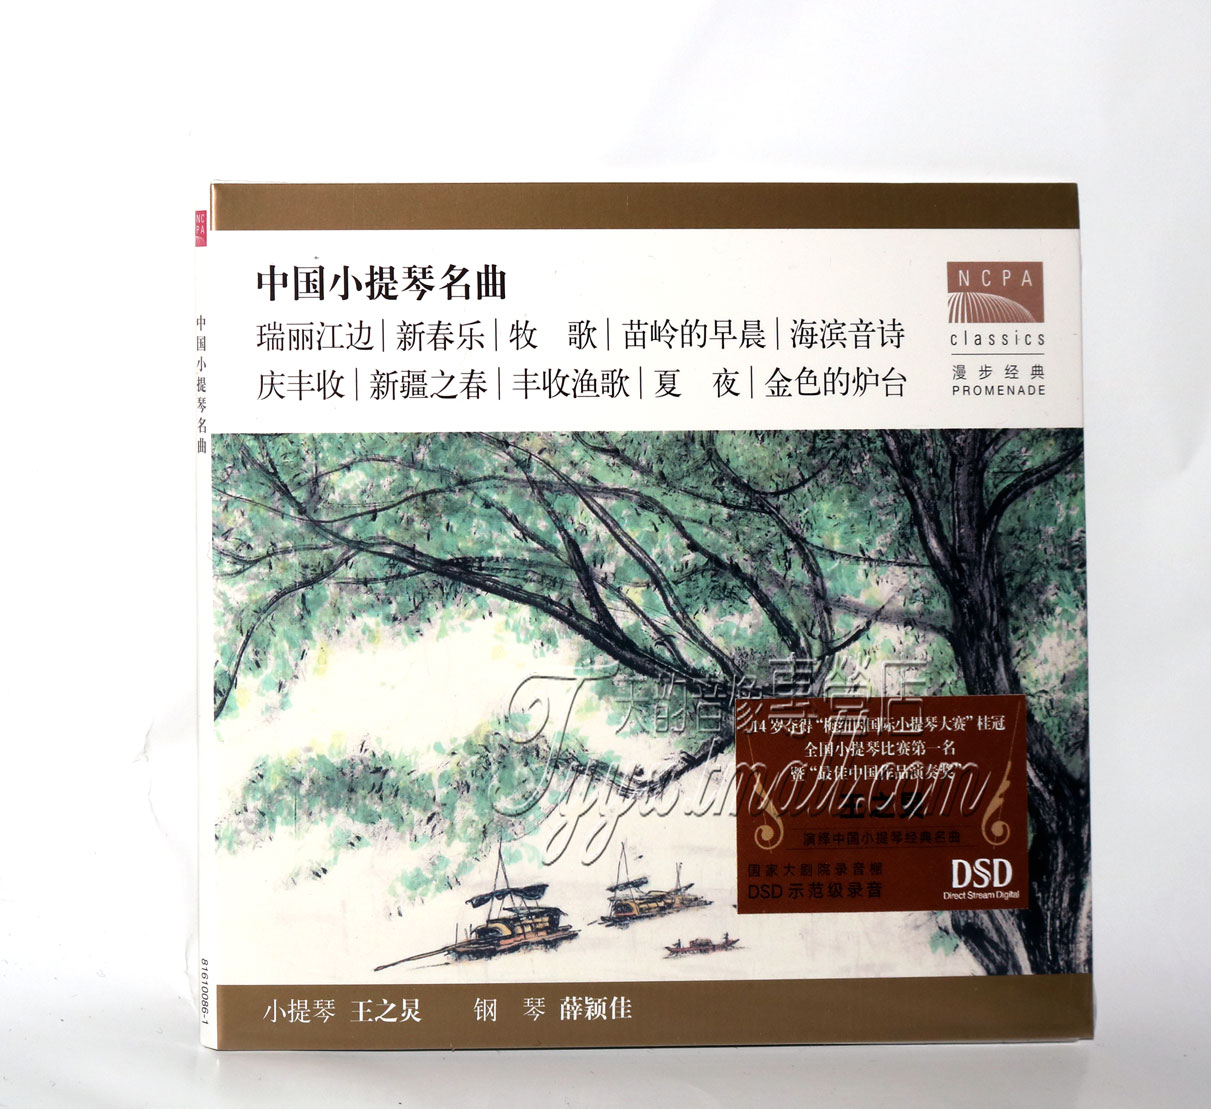 正版 中国国家大剧院 王之炅小提琴演奏 中国经典名曲 DSD 1CD